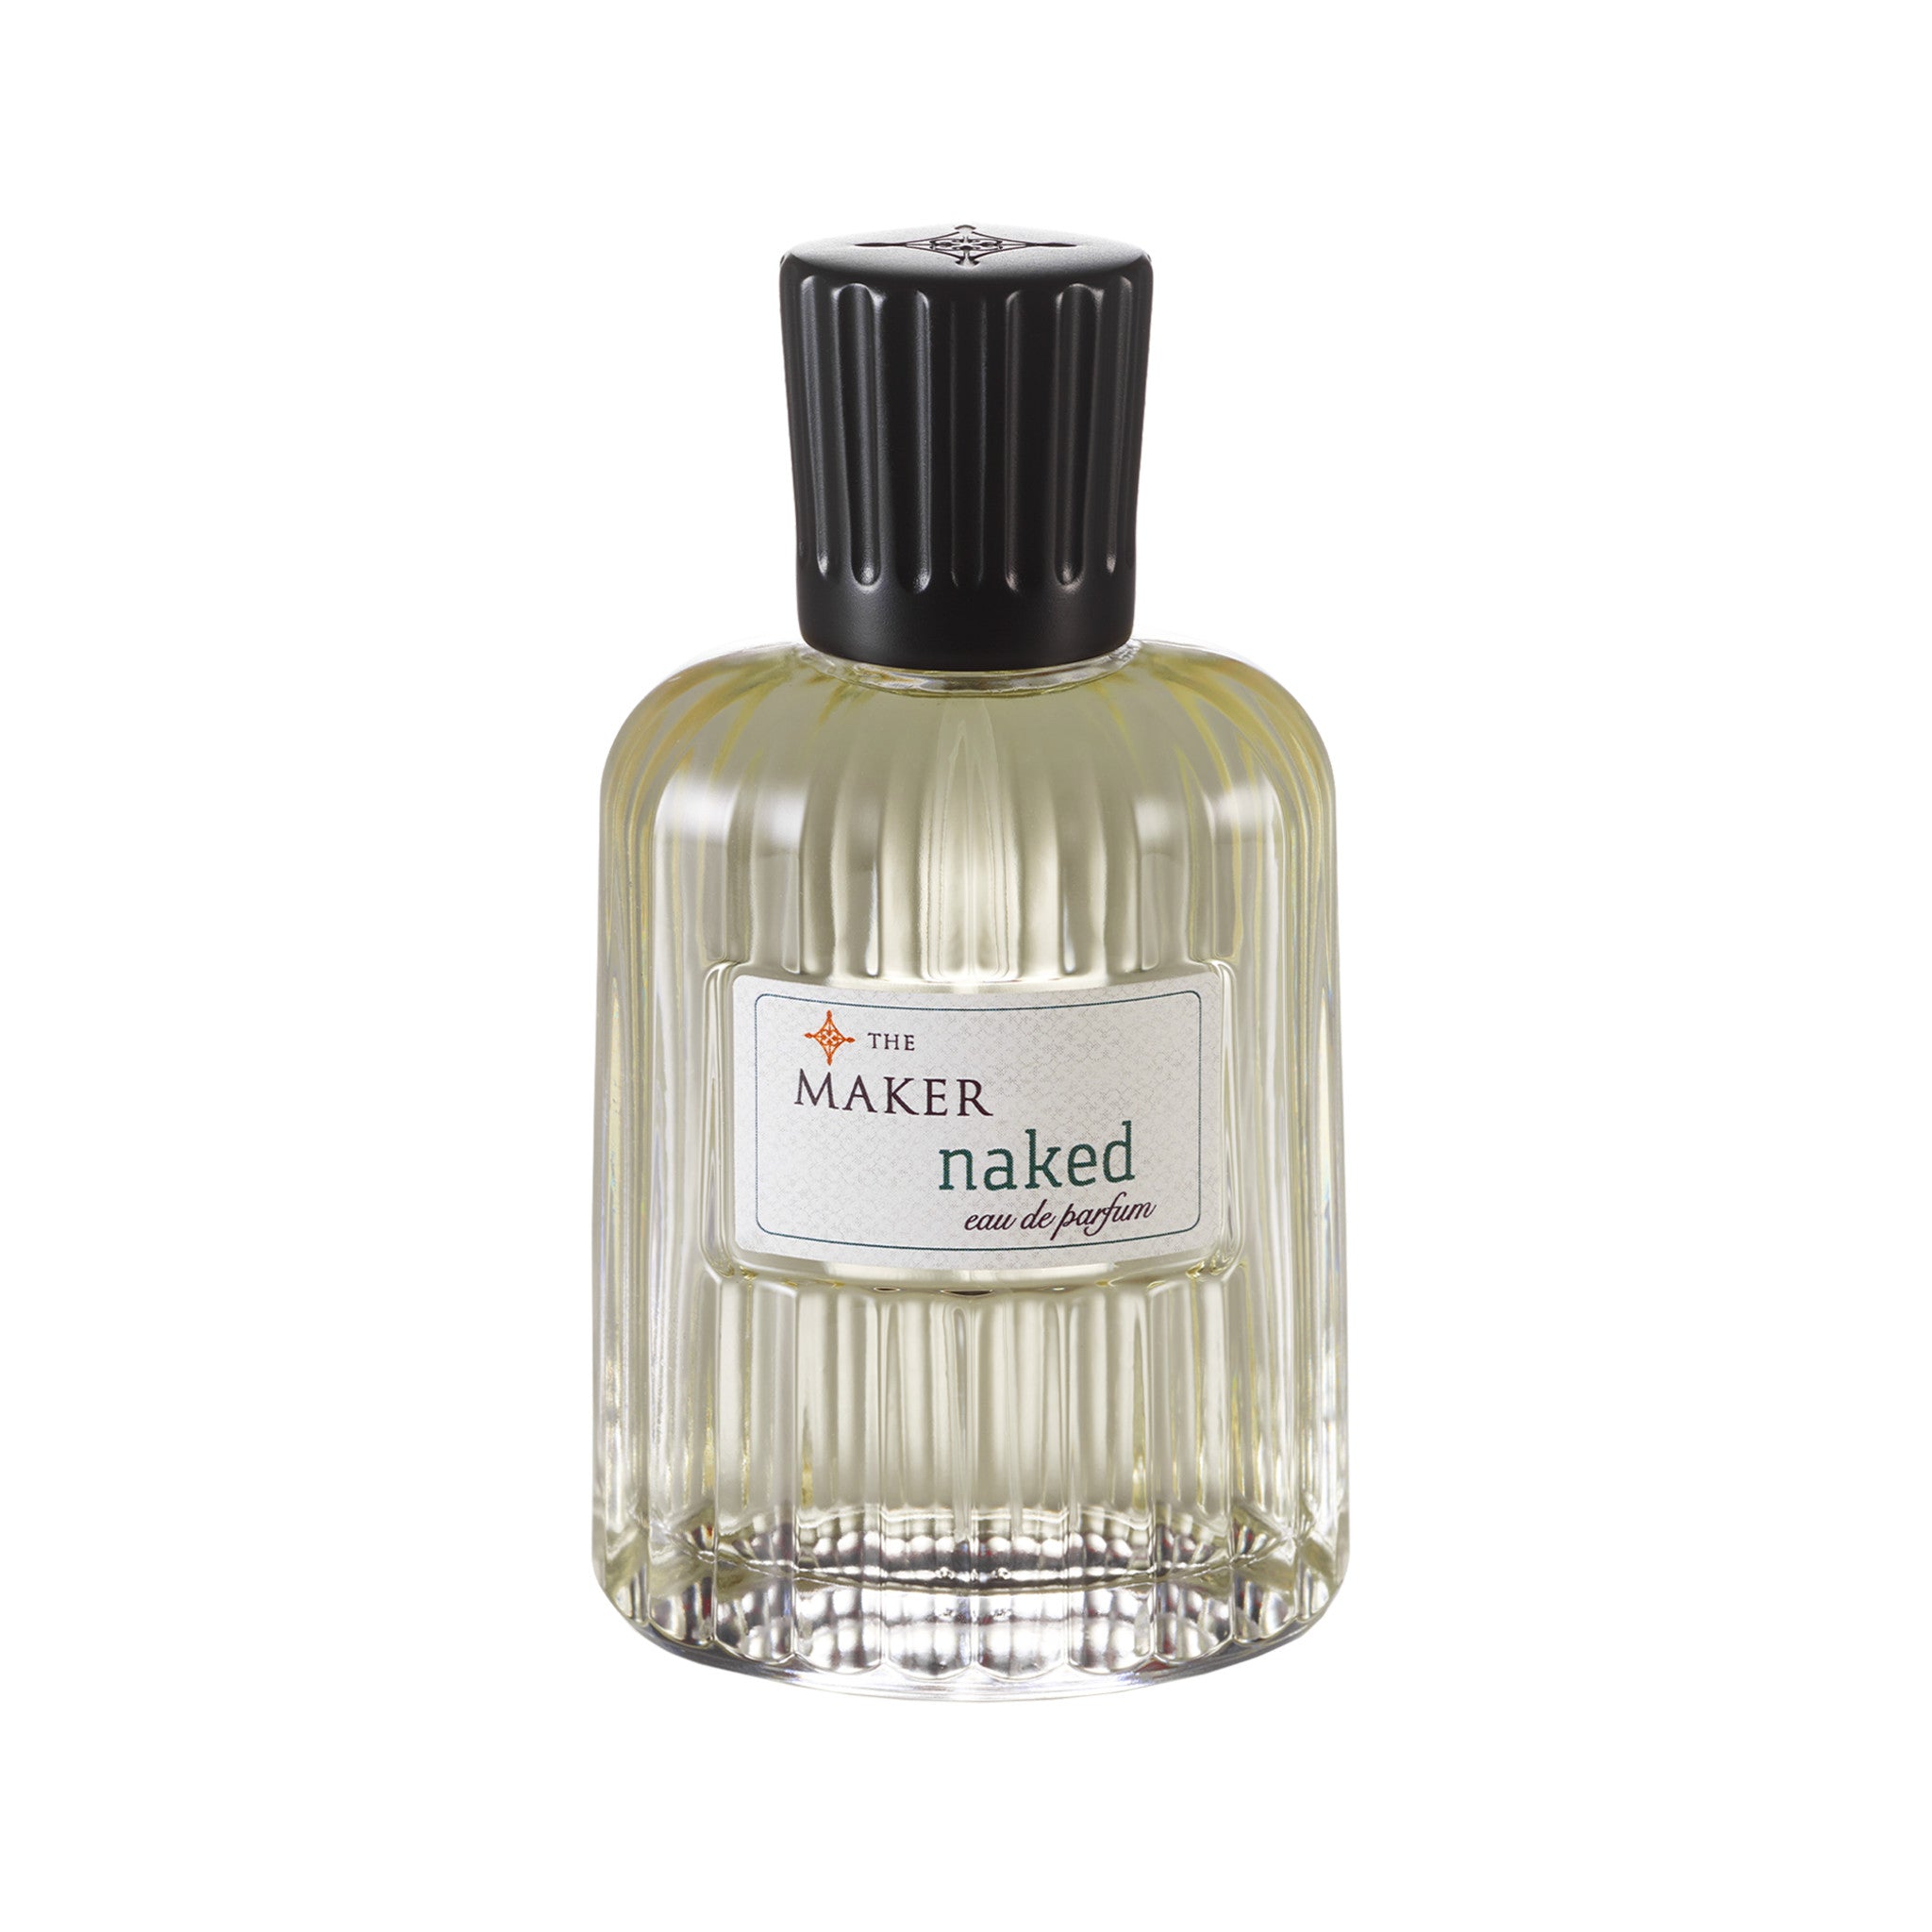 The Maker Naked Eau de Parfum main image.